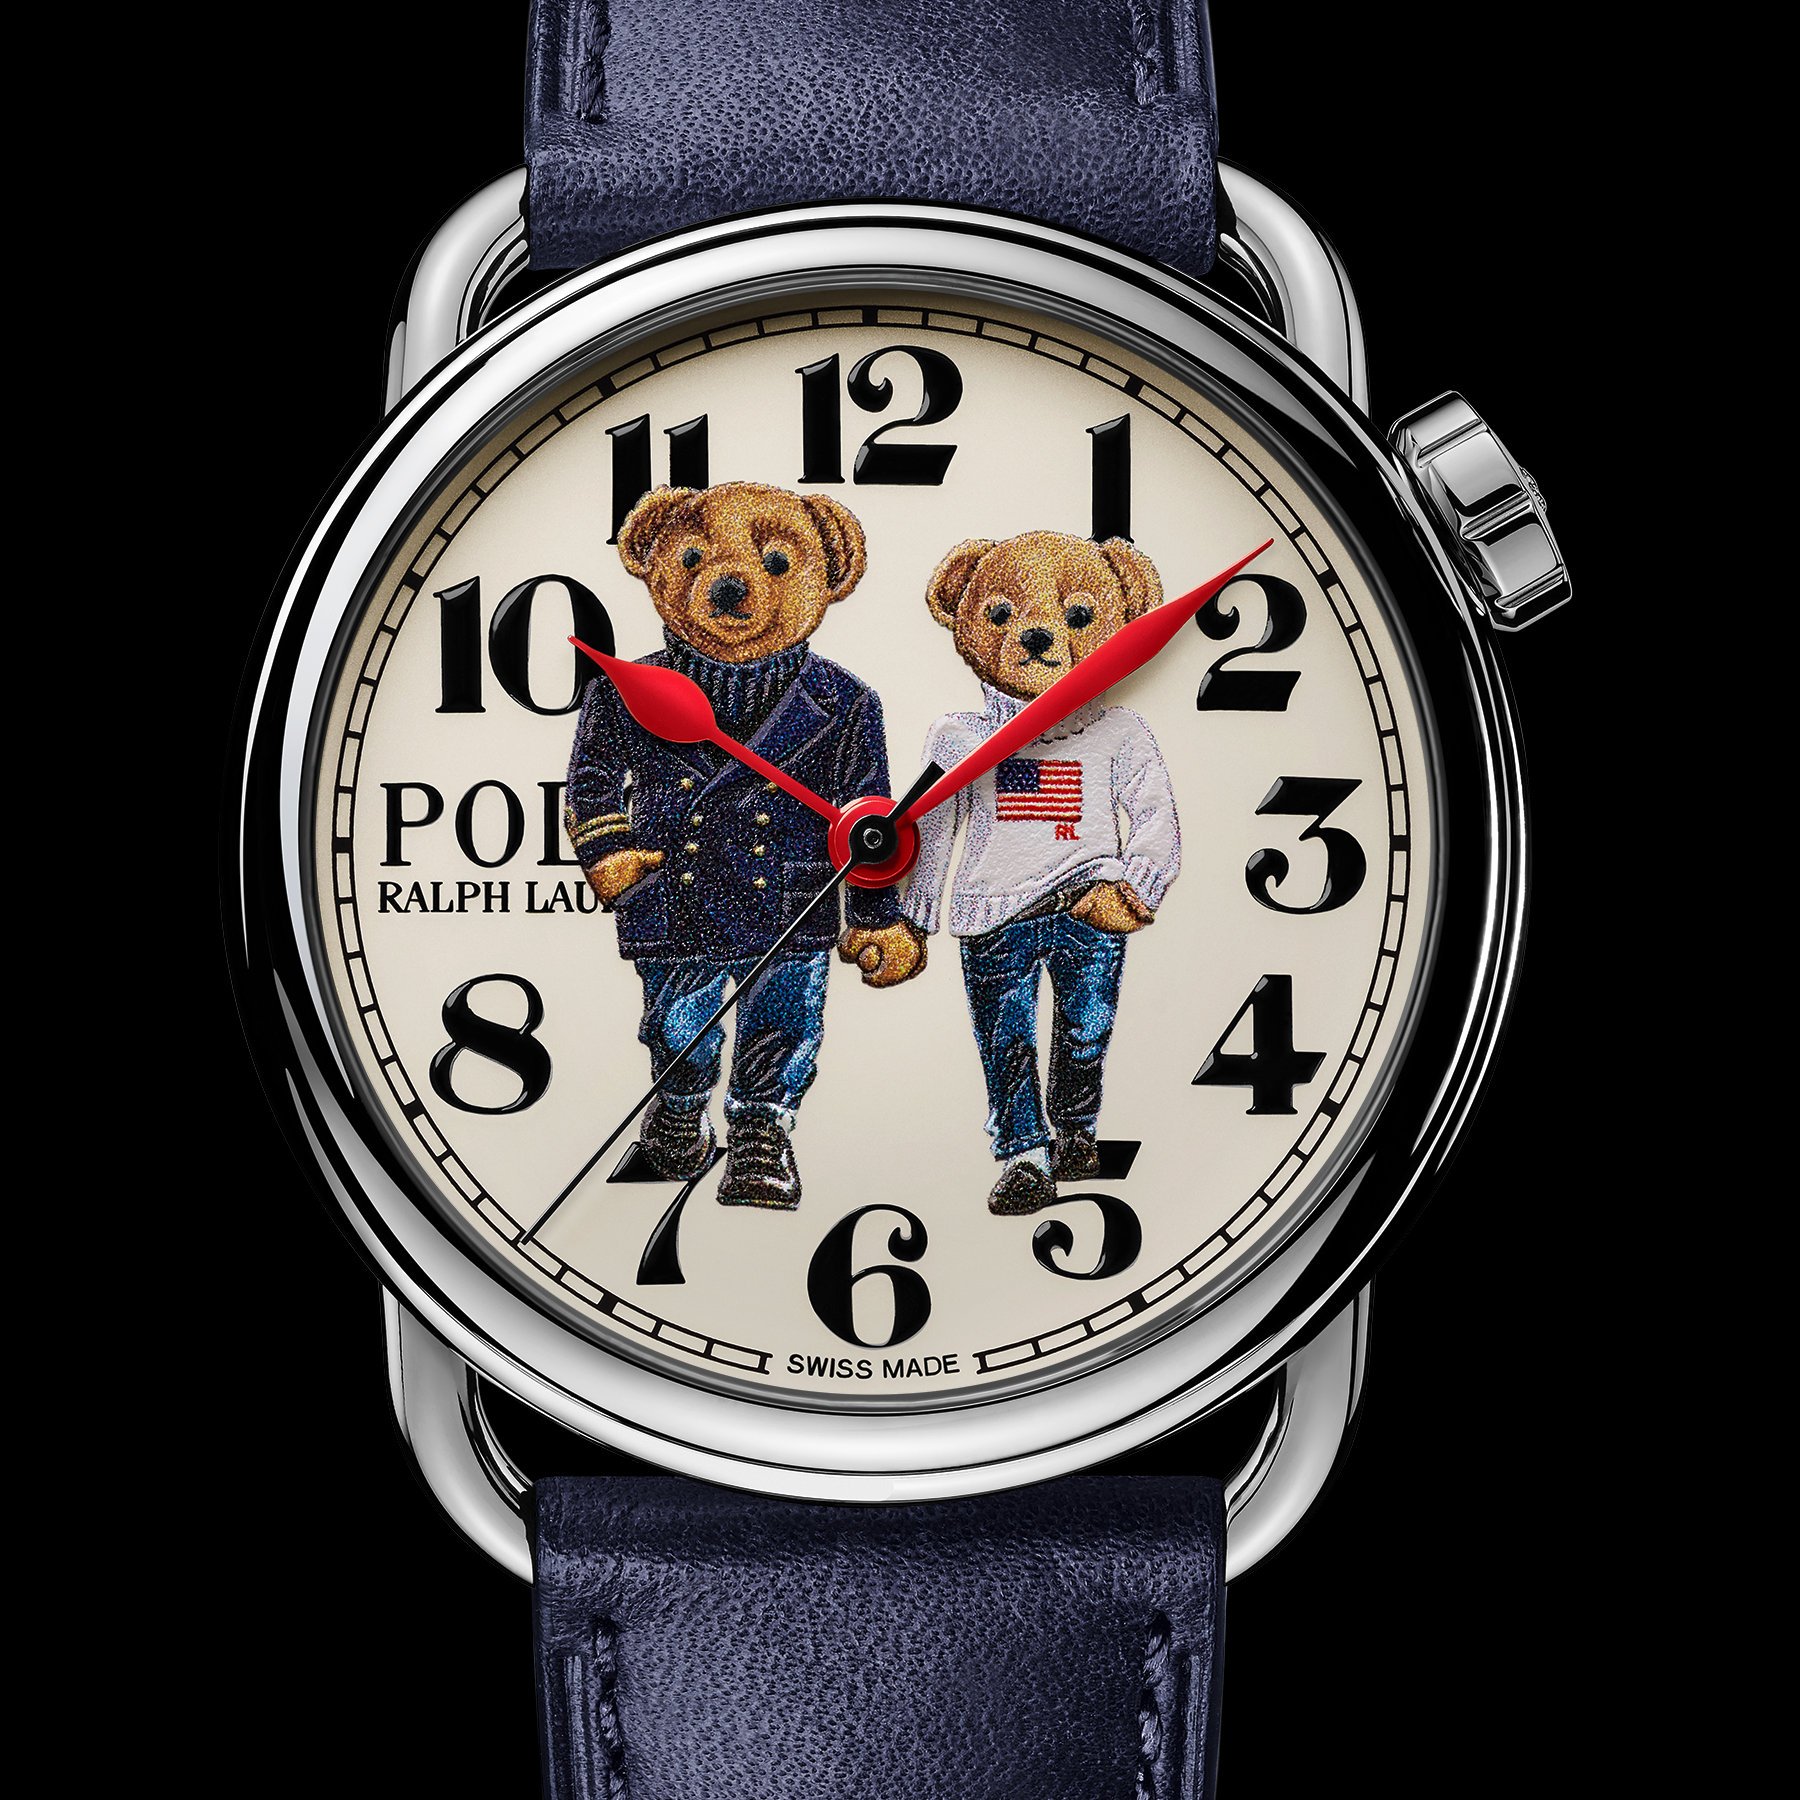 The Ralph Lauren Polo Bear Ralph & Ricky Bear Watch - Monochrome